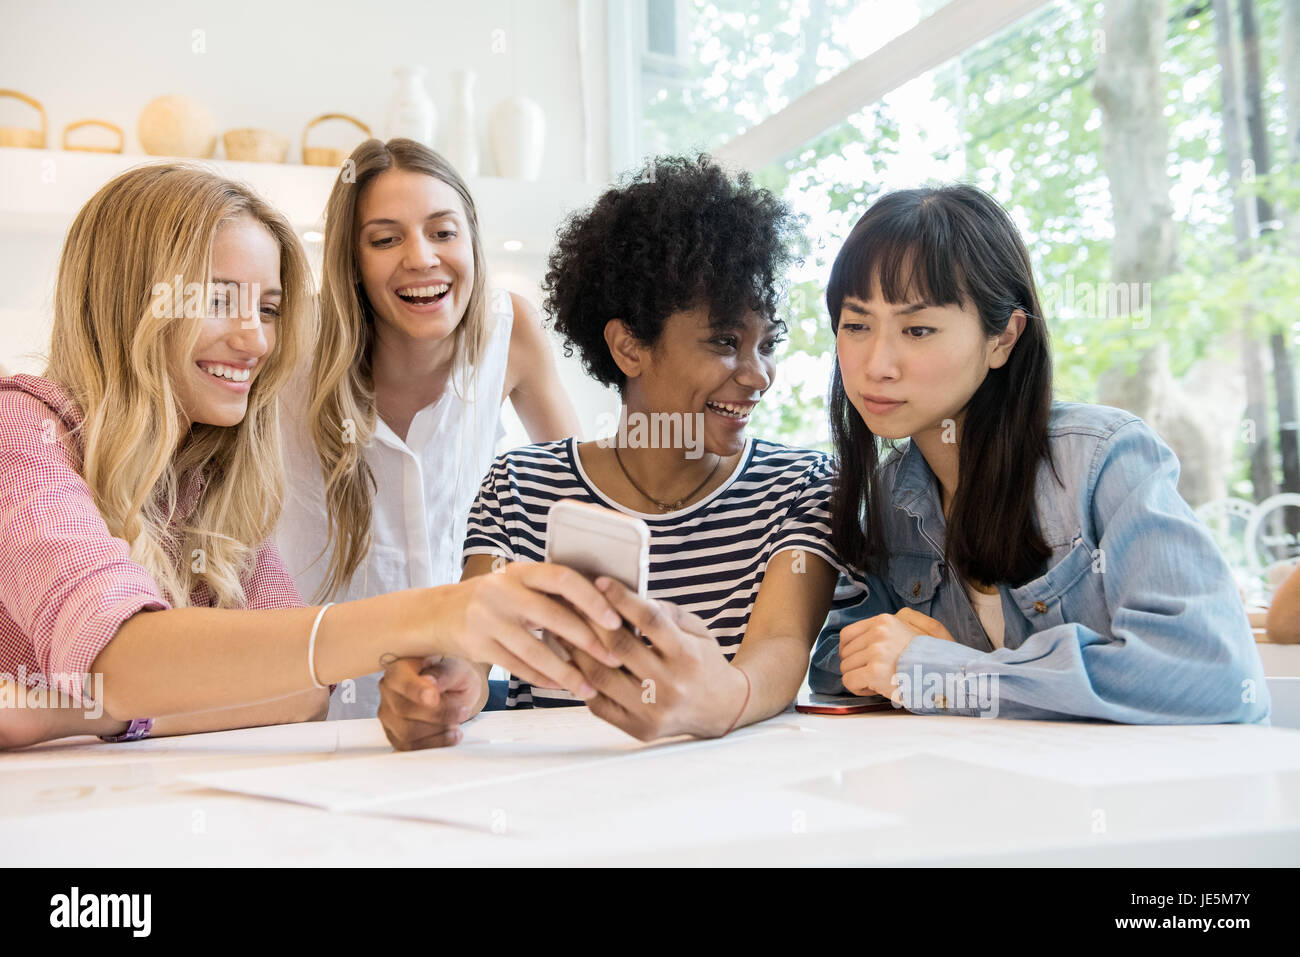 Junge Frauen lachen über Multimedia-Smartphone im café Stockfoto